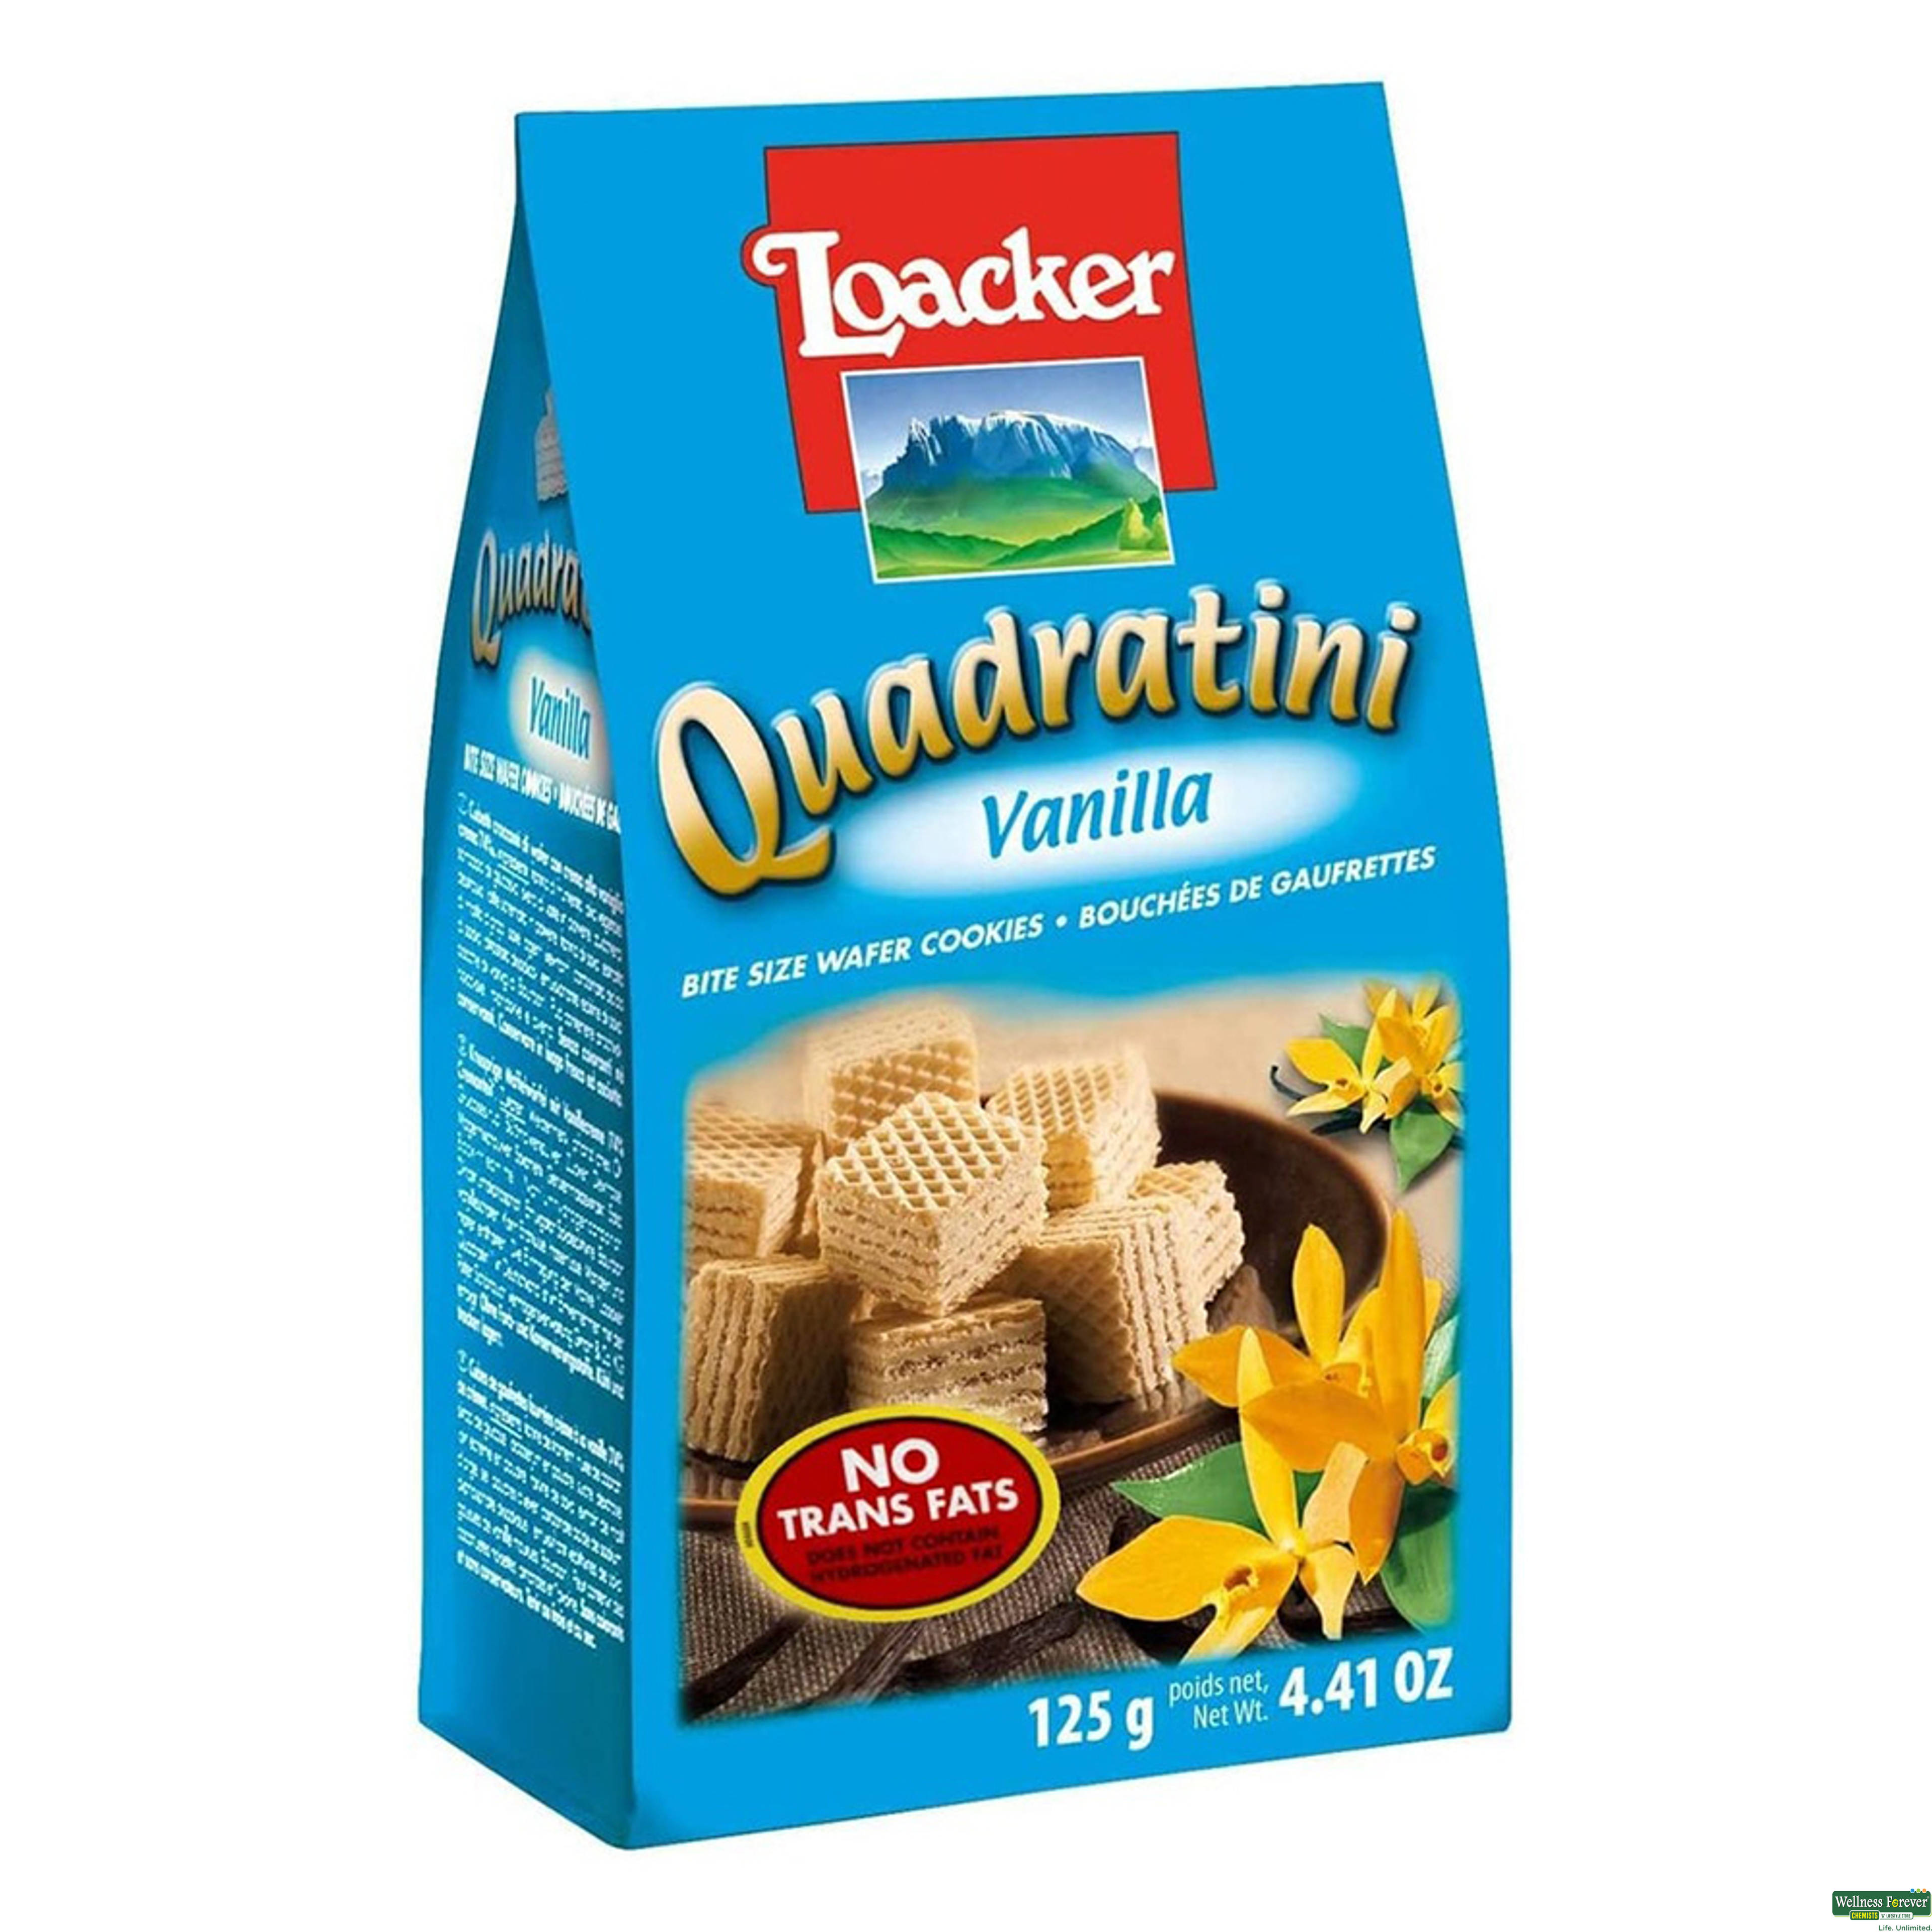 Loacker Quadratini Vanilla, 125 g-image